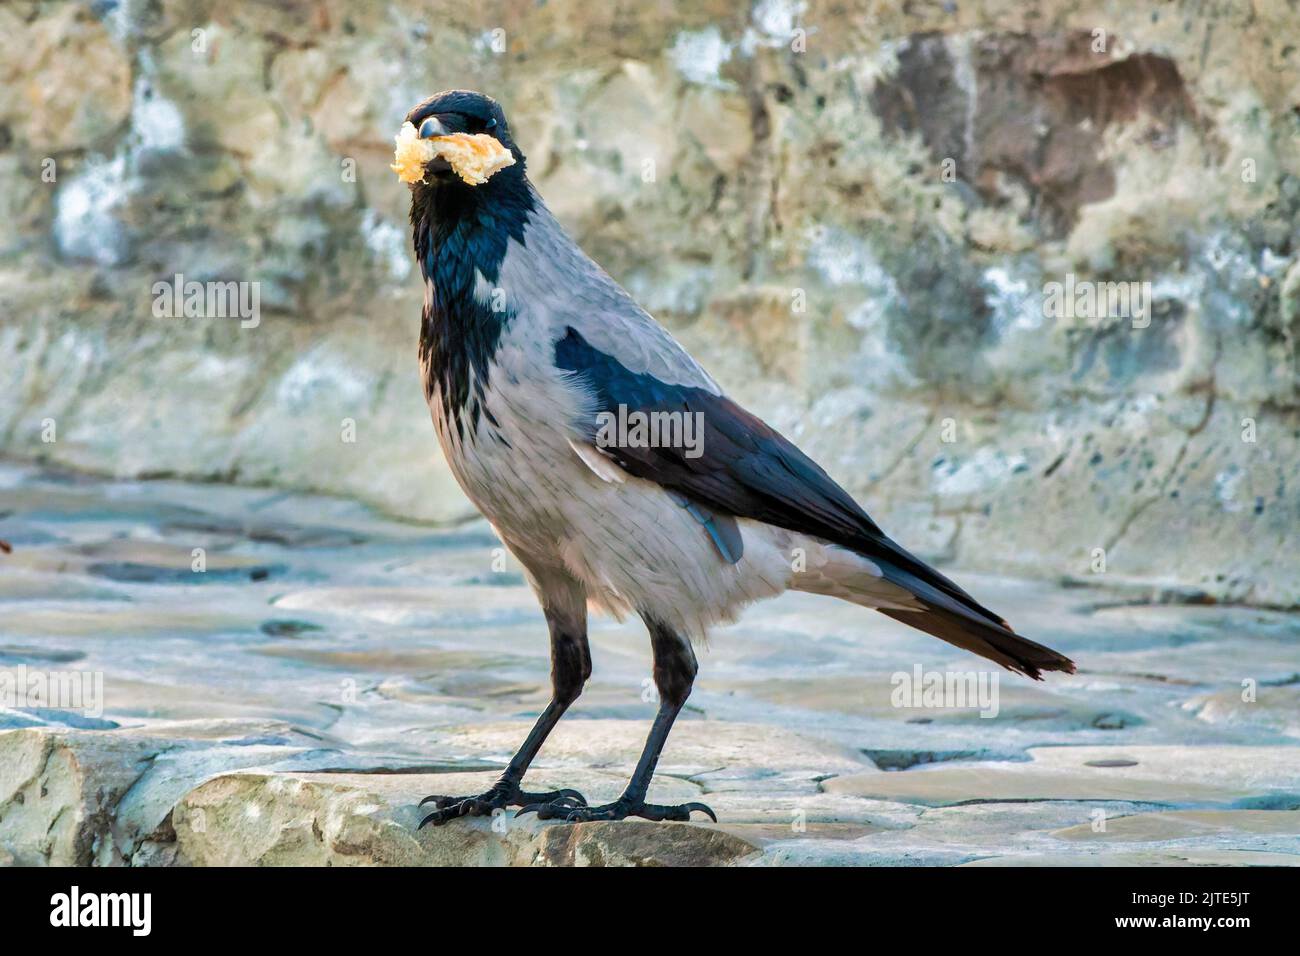 Corbeau à capuchon (Corvus cornix) pour voler du pain Banque D'Images